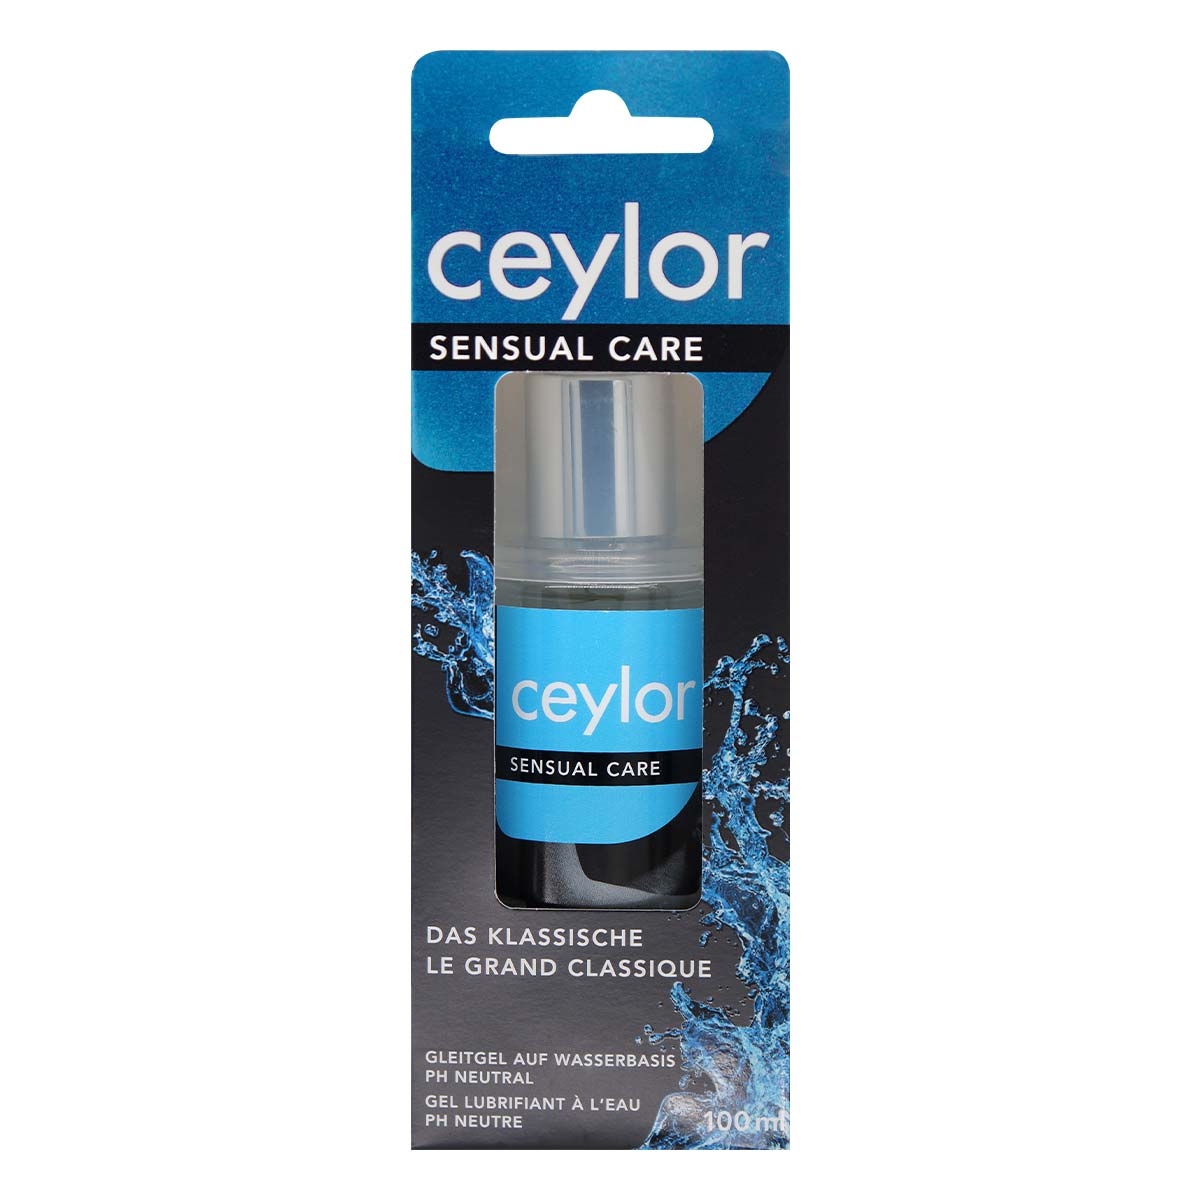 ceylor 私密保濕水性潤滑劑 100ml-p_2